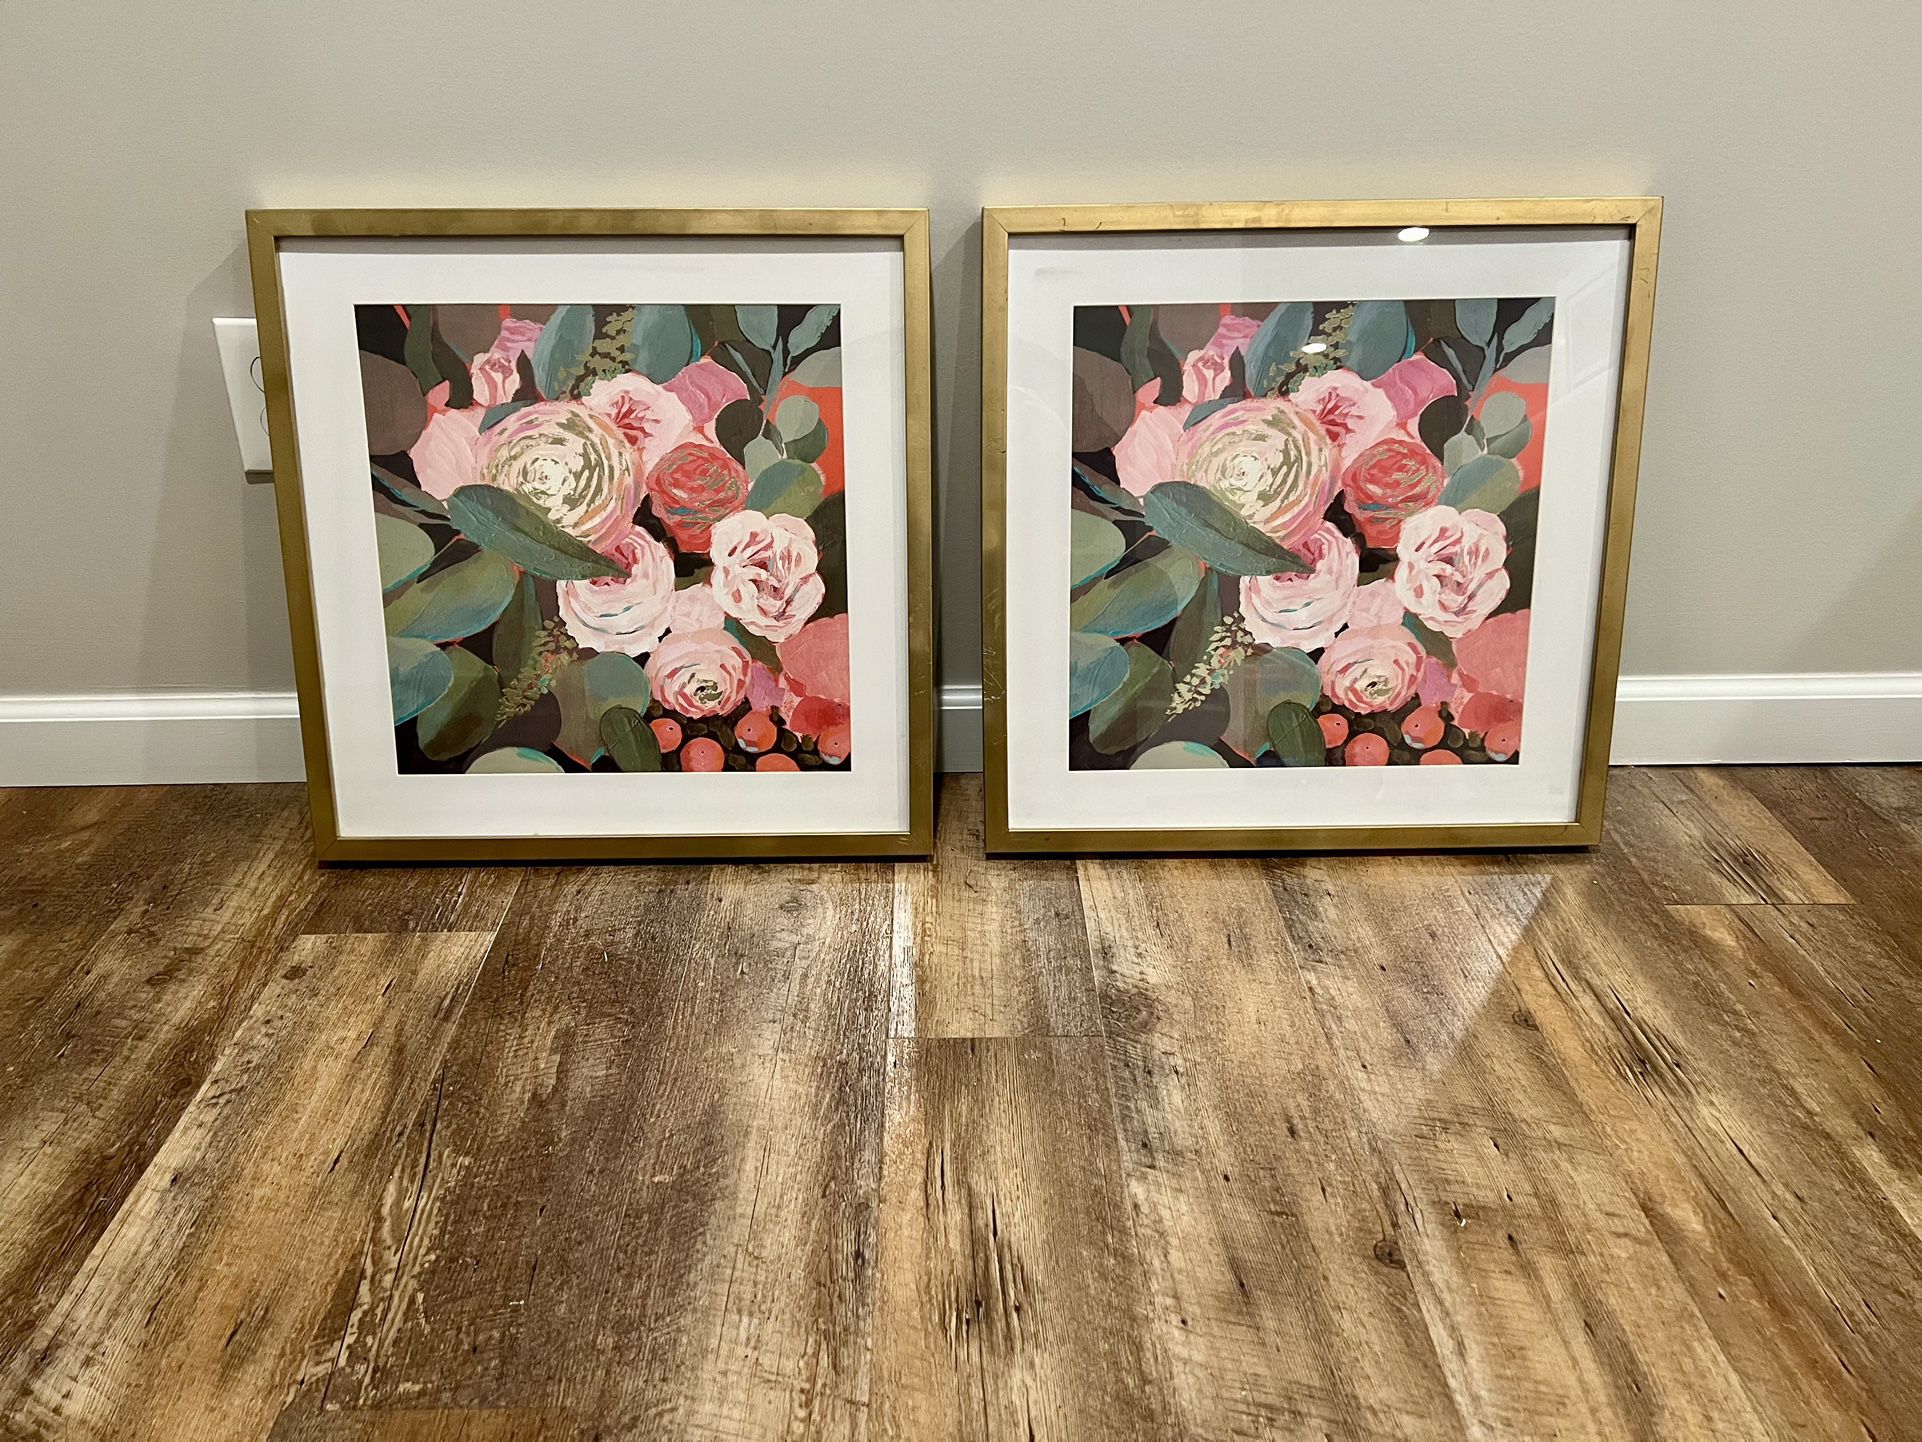 Decorative Floral Prints - Set of 2